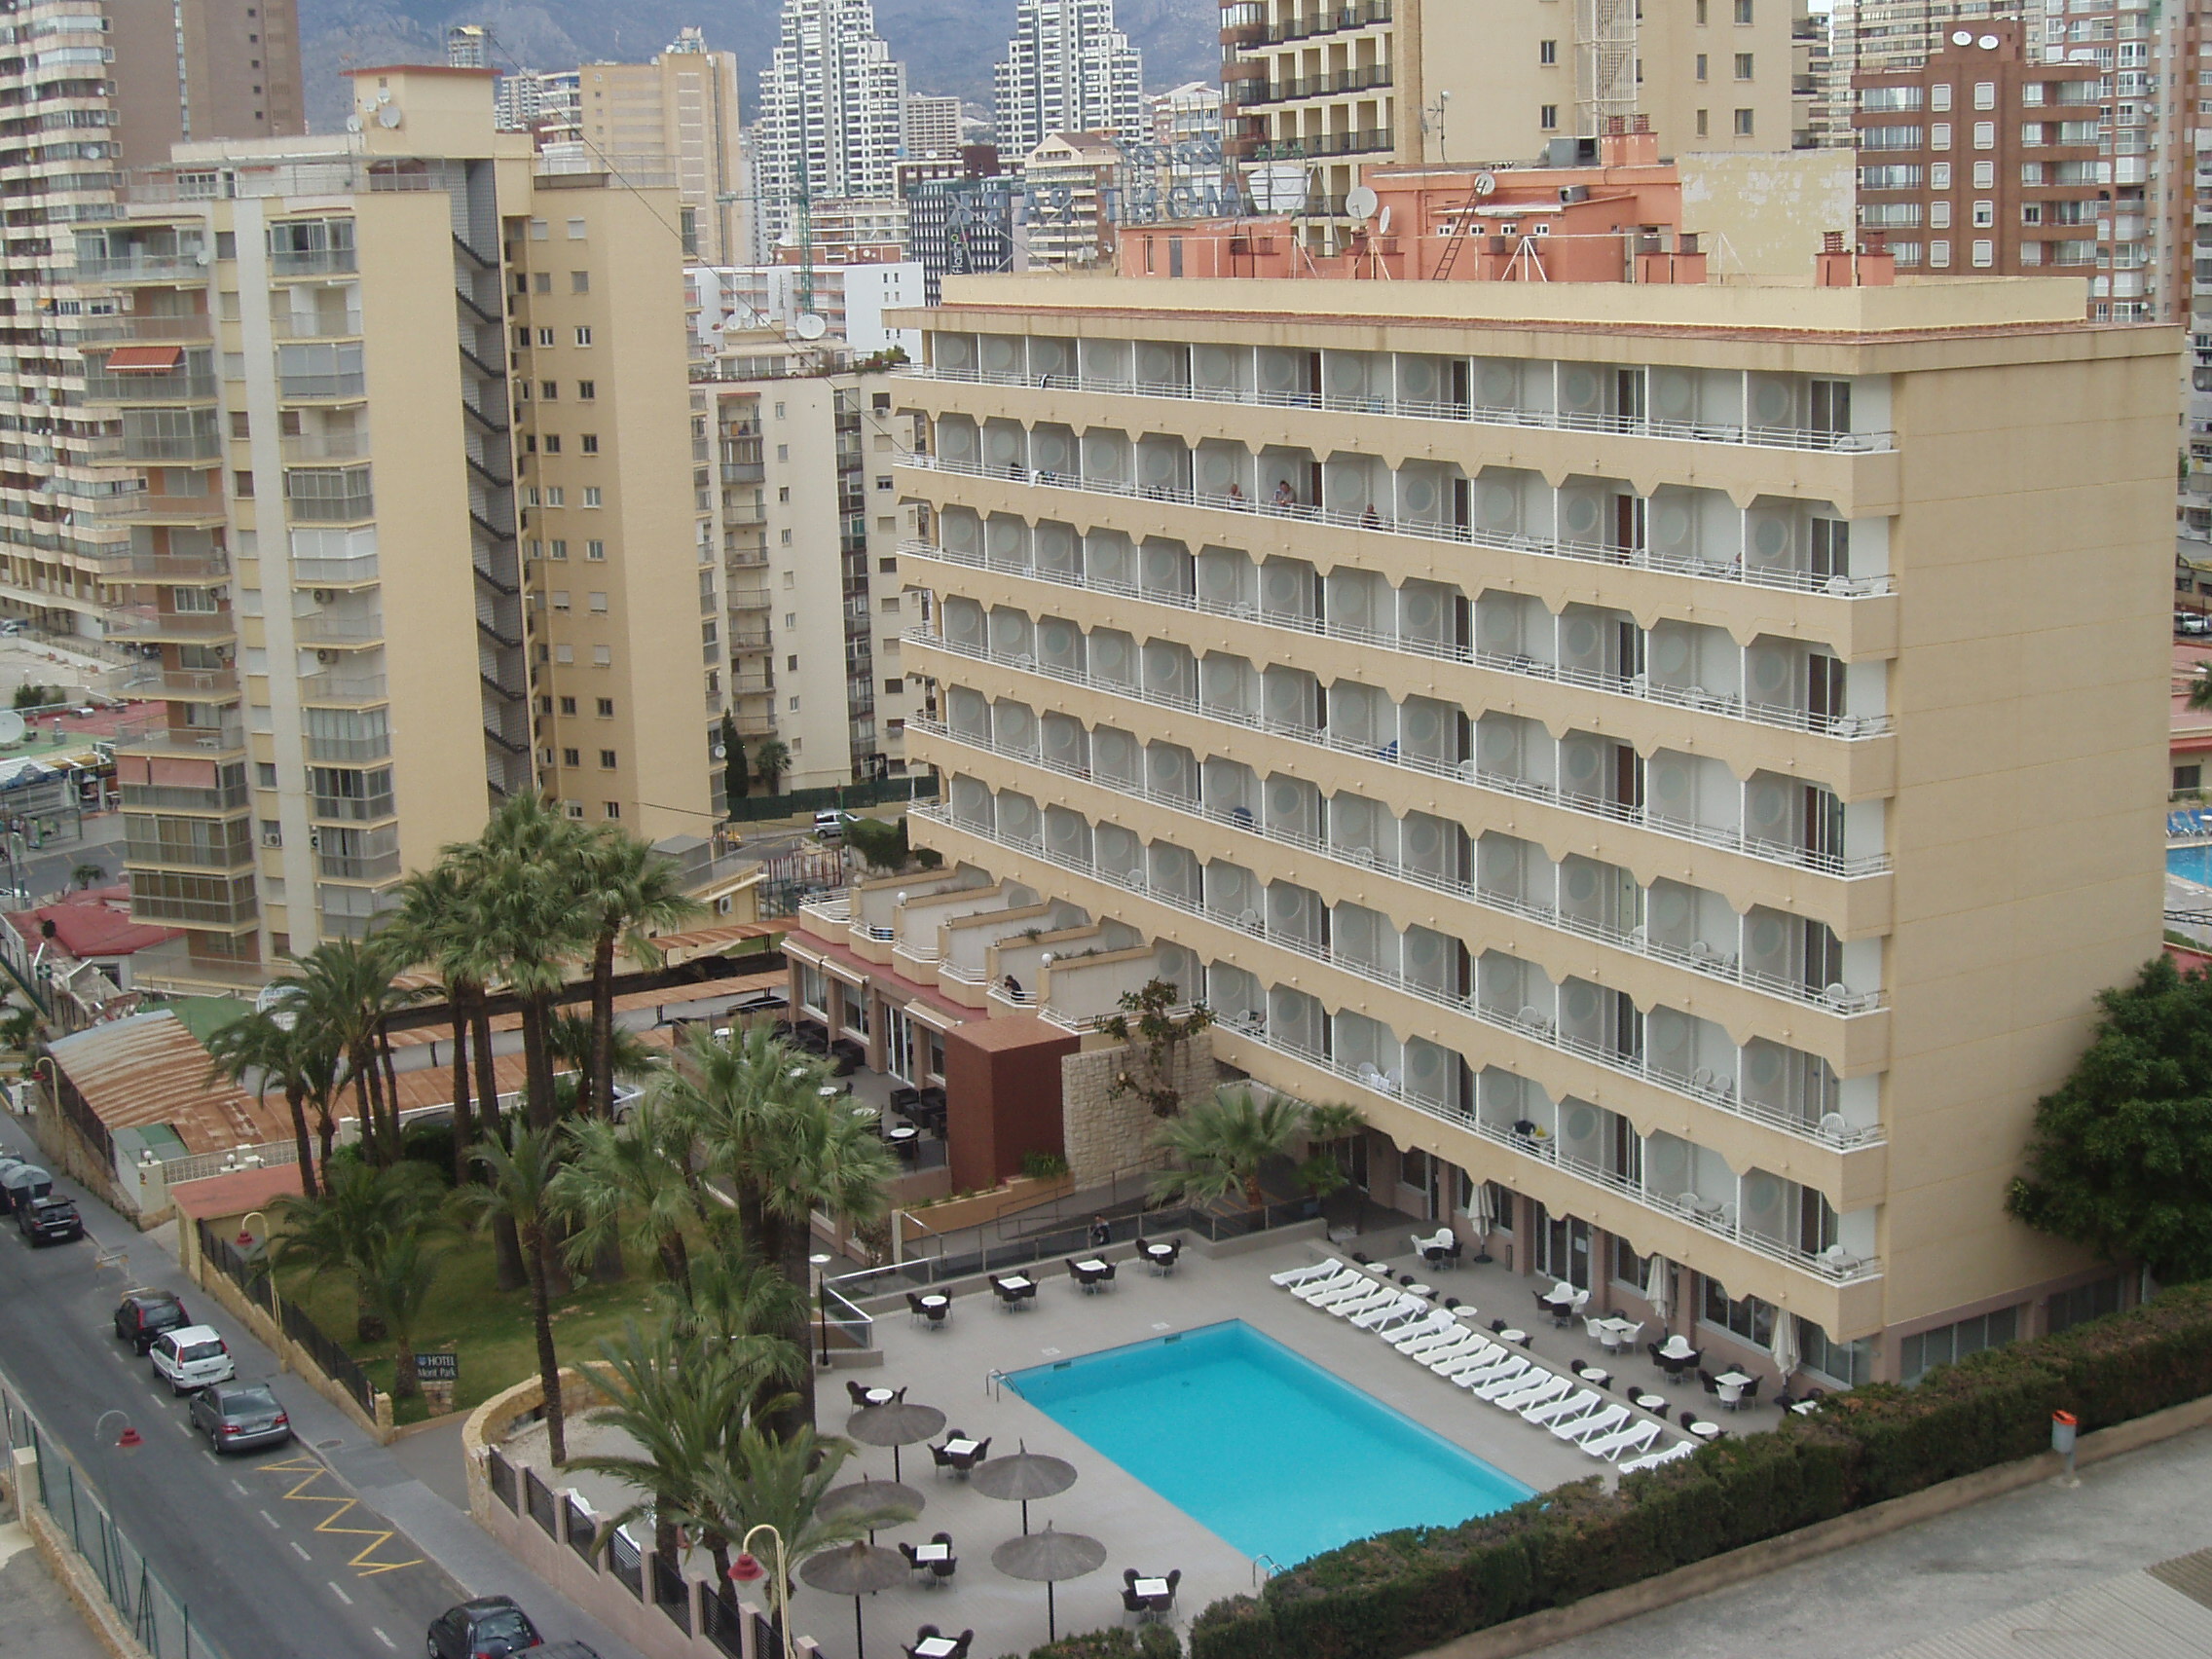 Hotel Mont-Park